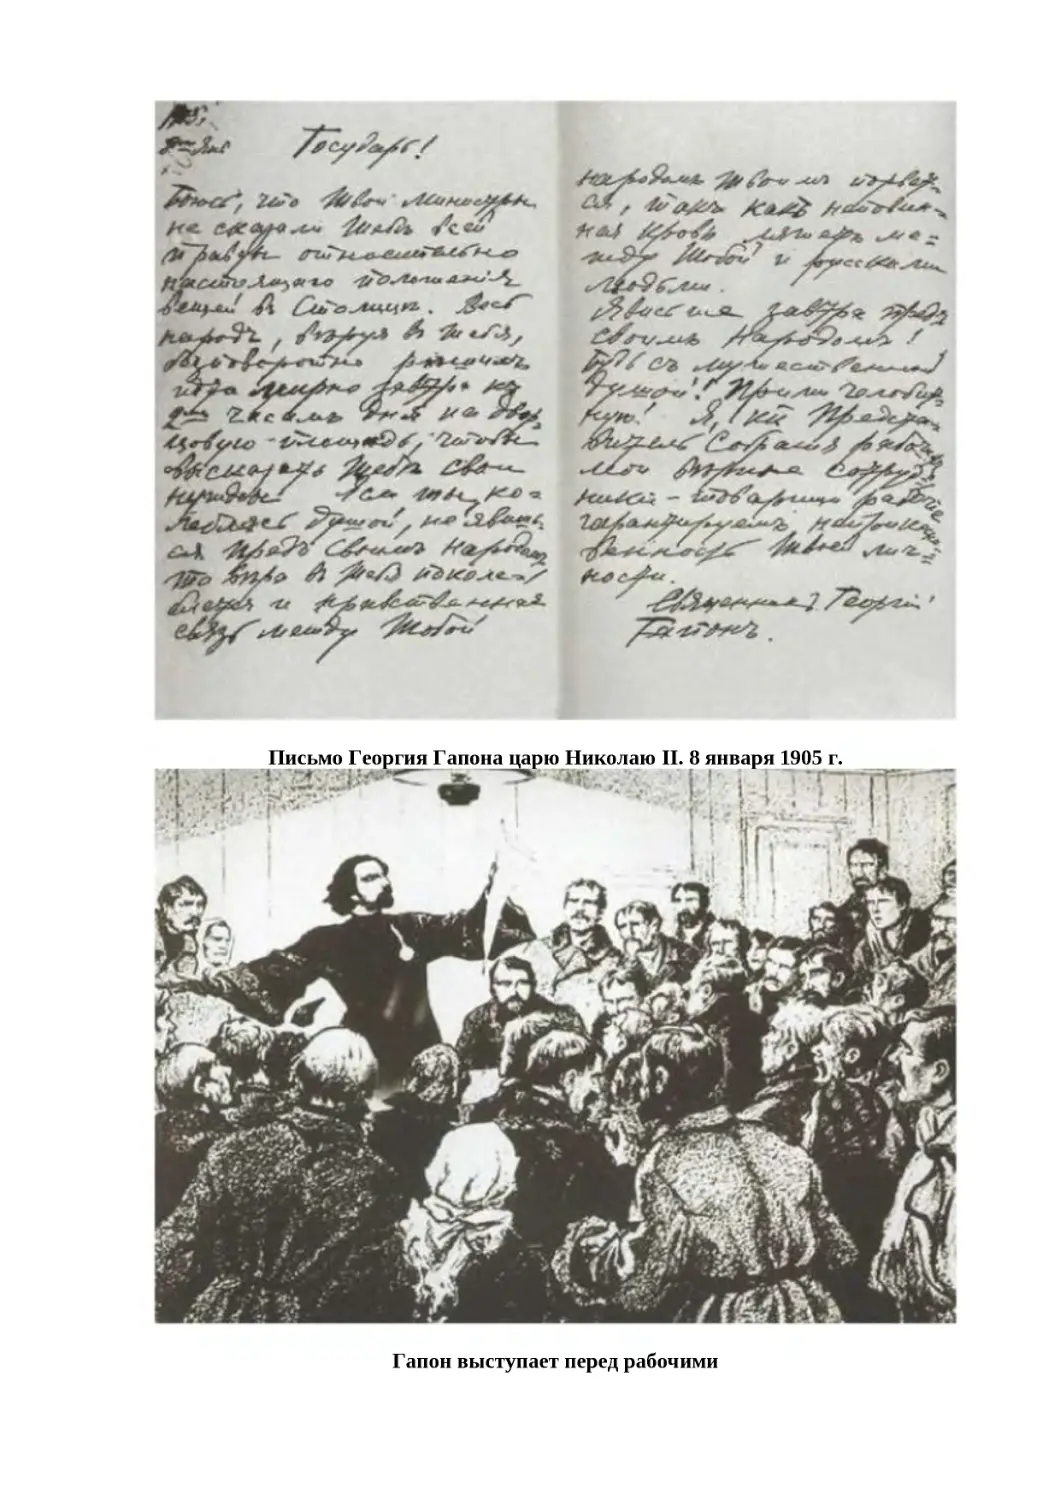 "
﻿Письмо Георгия Гапона царю Николаю II. 8 января 1905 г
"
﻿Гапон выступает перед рабочим